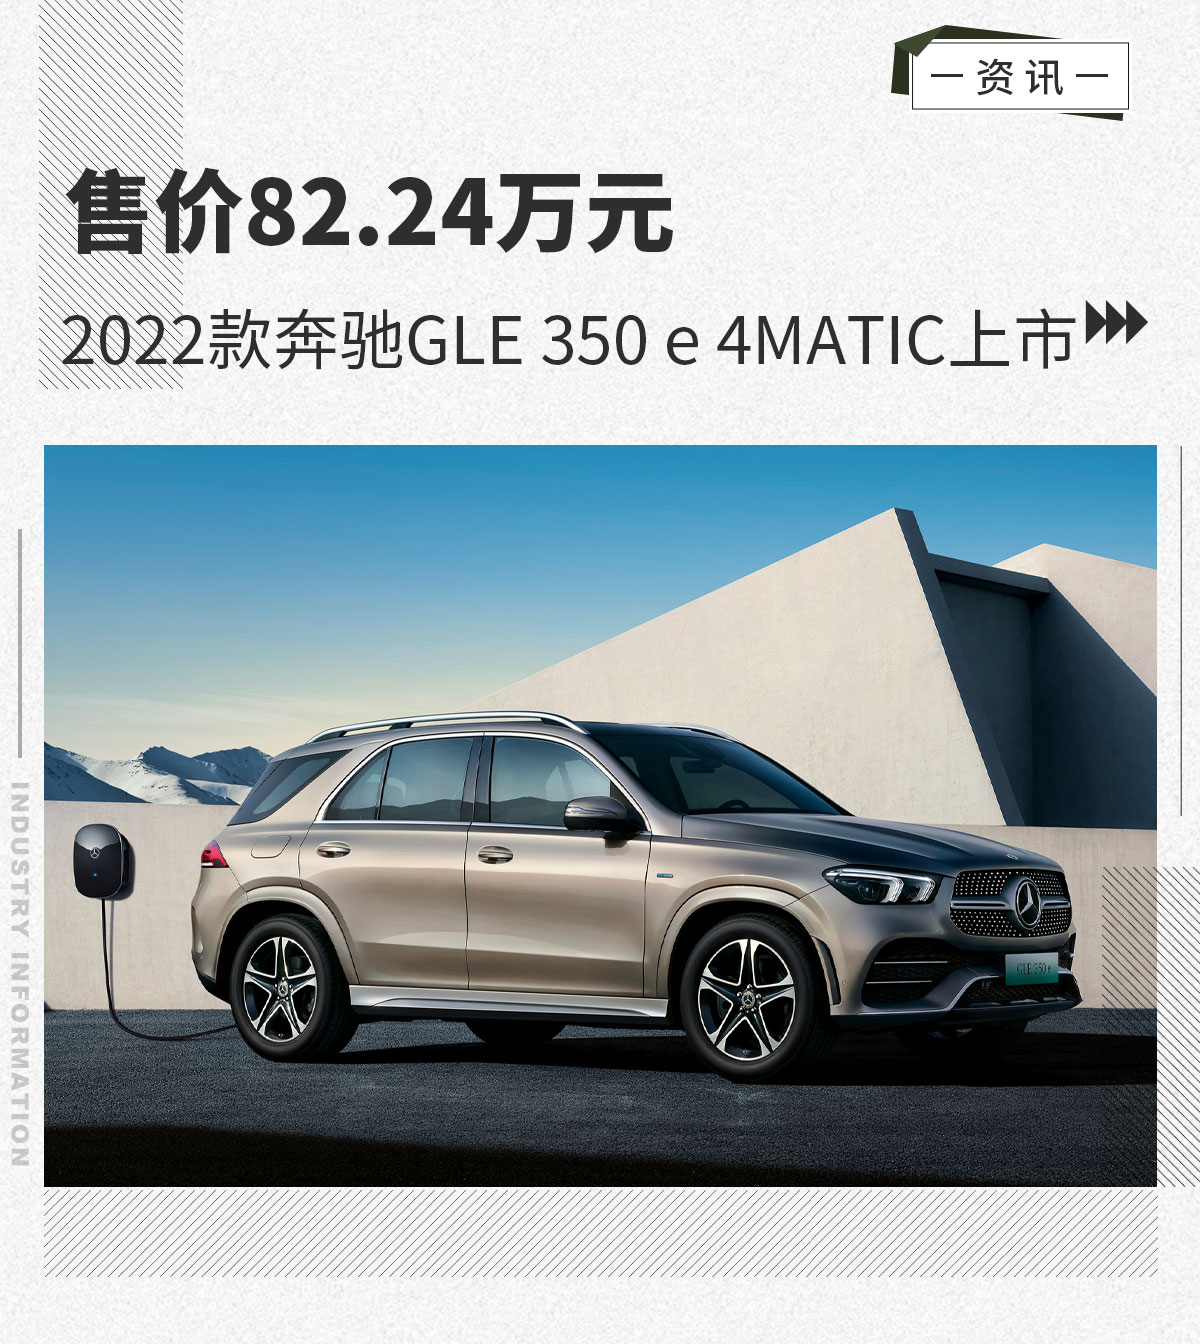 售价82.24万元 2022款奔驰GLE 350 e 4MATIC上市